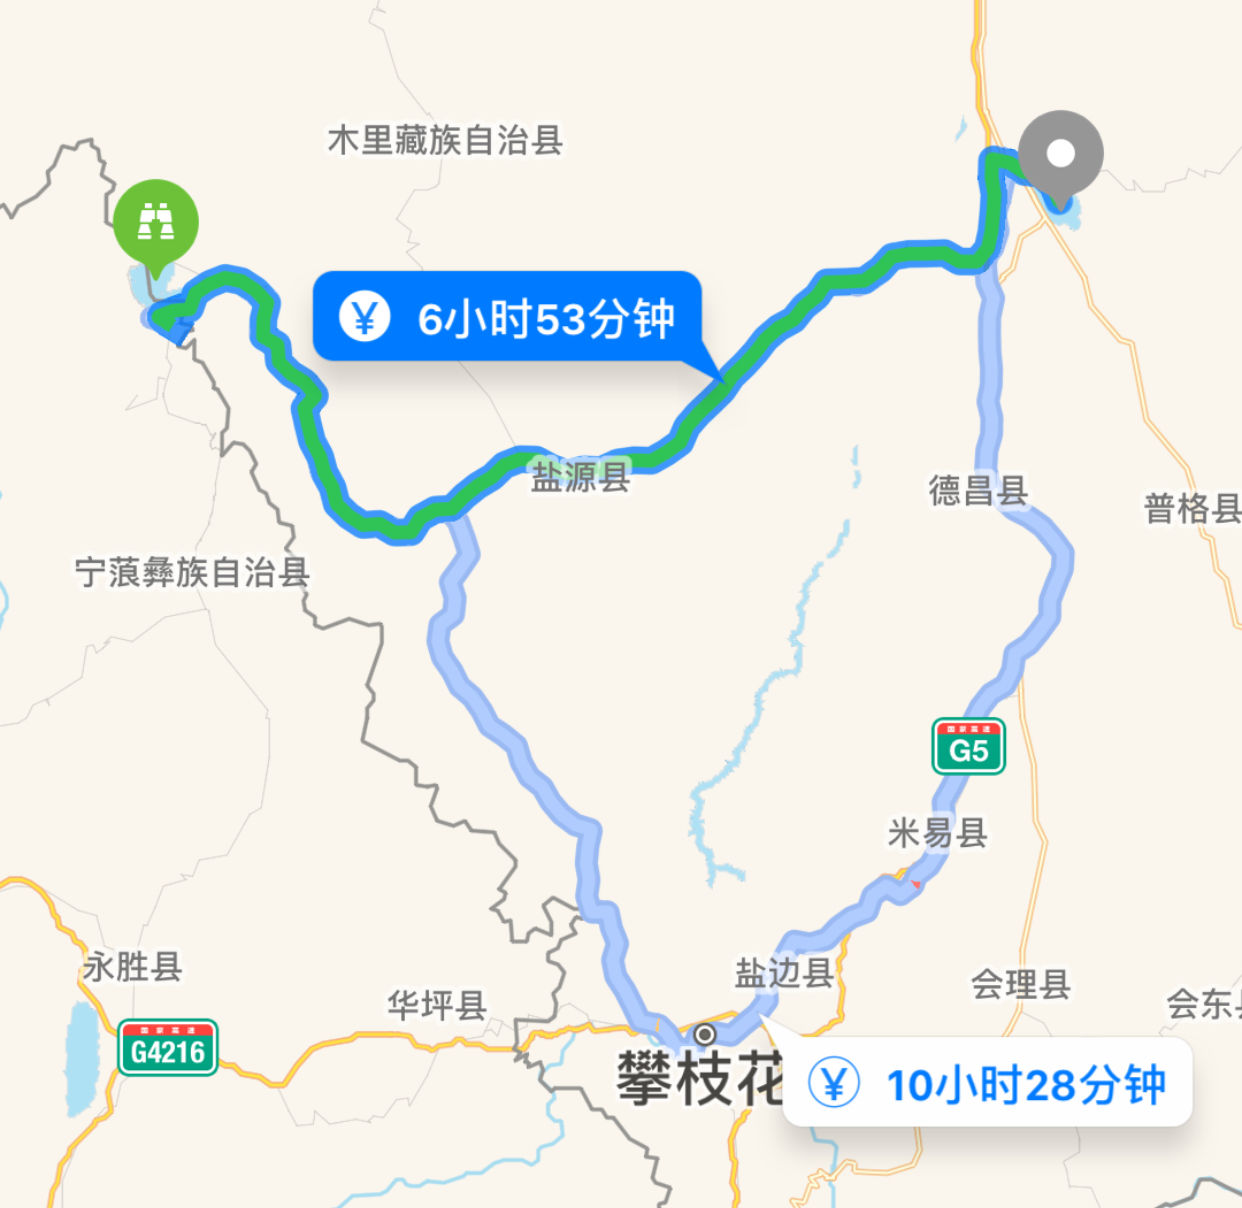 旅游 正文  坐落在西昌市的邛海是四川省第二大淡水湖,它不仅风景秀美图片